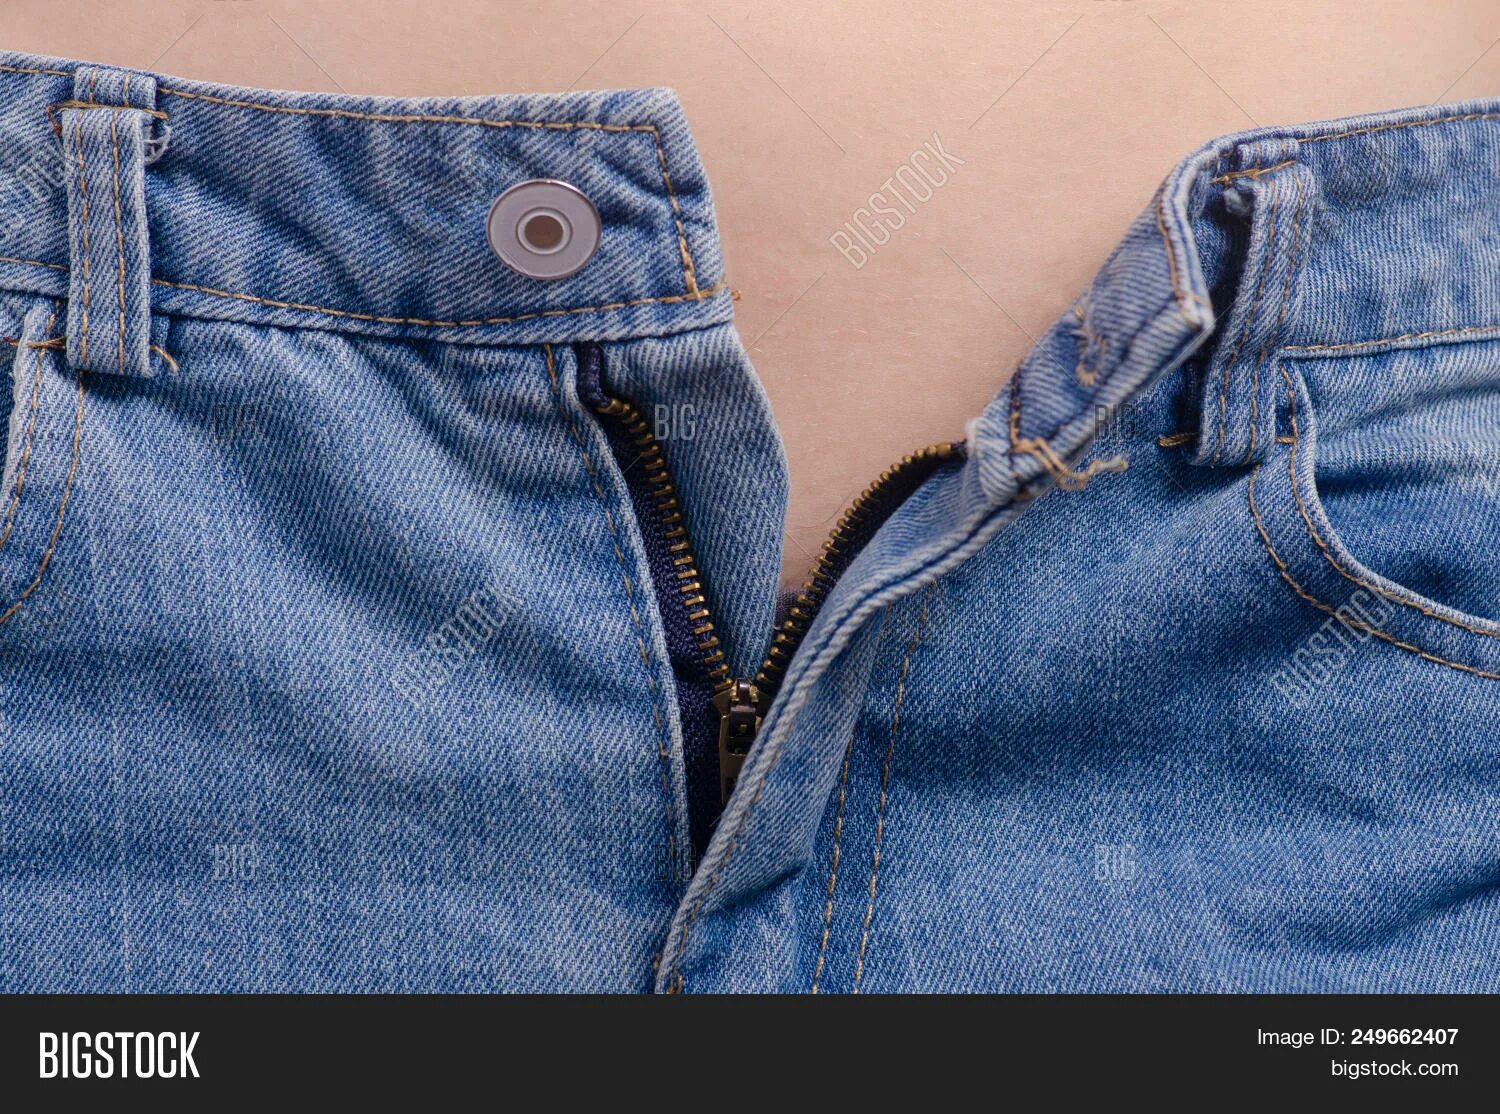 Расстегнутые джинсы вид сверху. Джинсы в расстегнутом виде. Тренд расстегнутые джинсы. Расстегнутые джинсы сбоку.